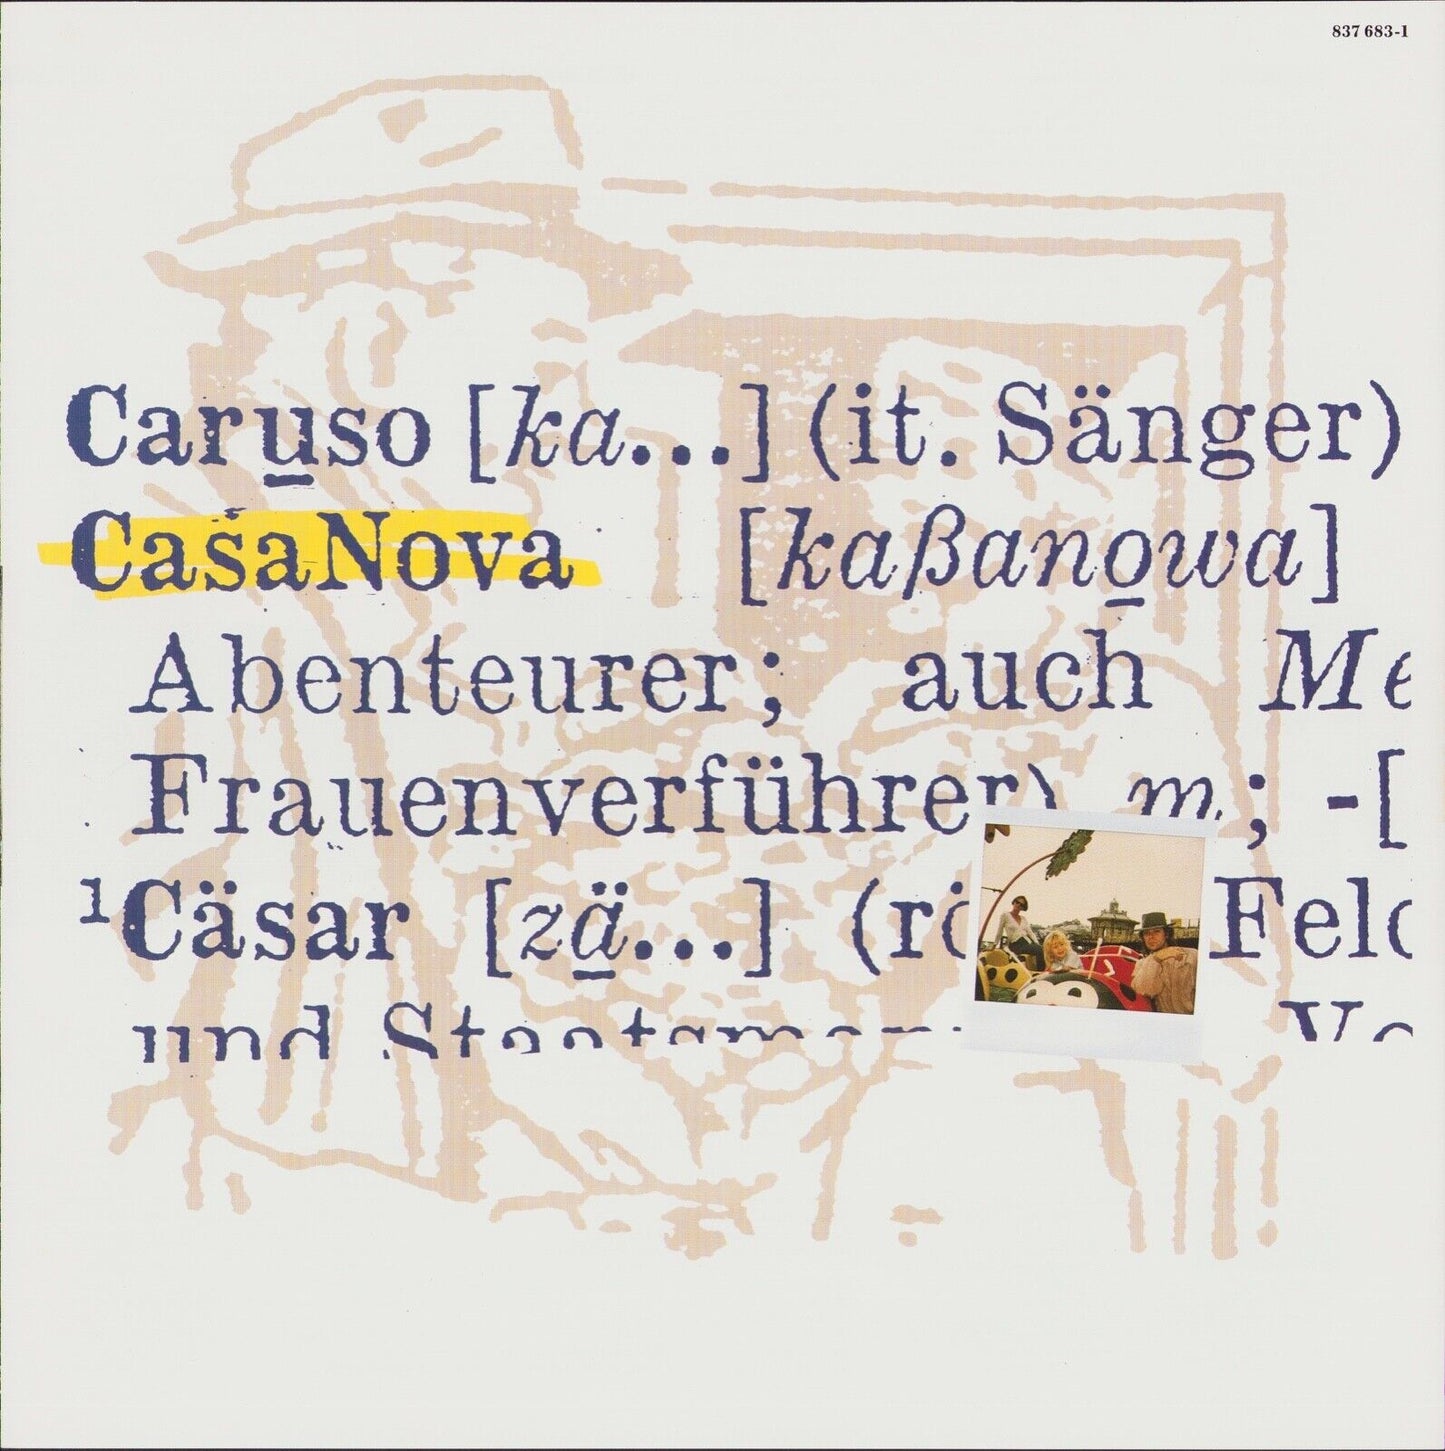 Udo Lindenberg - CasaNova Vinyl LP